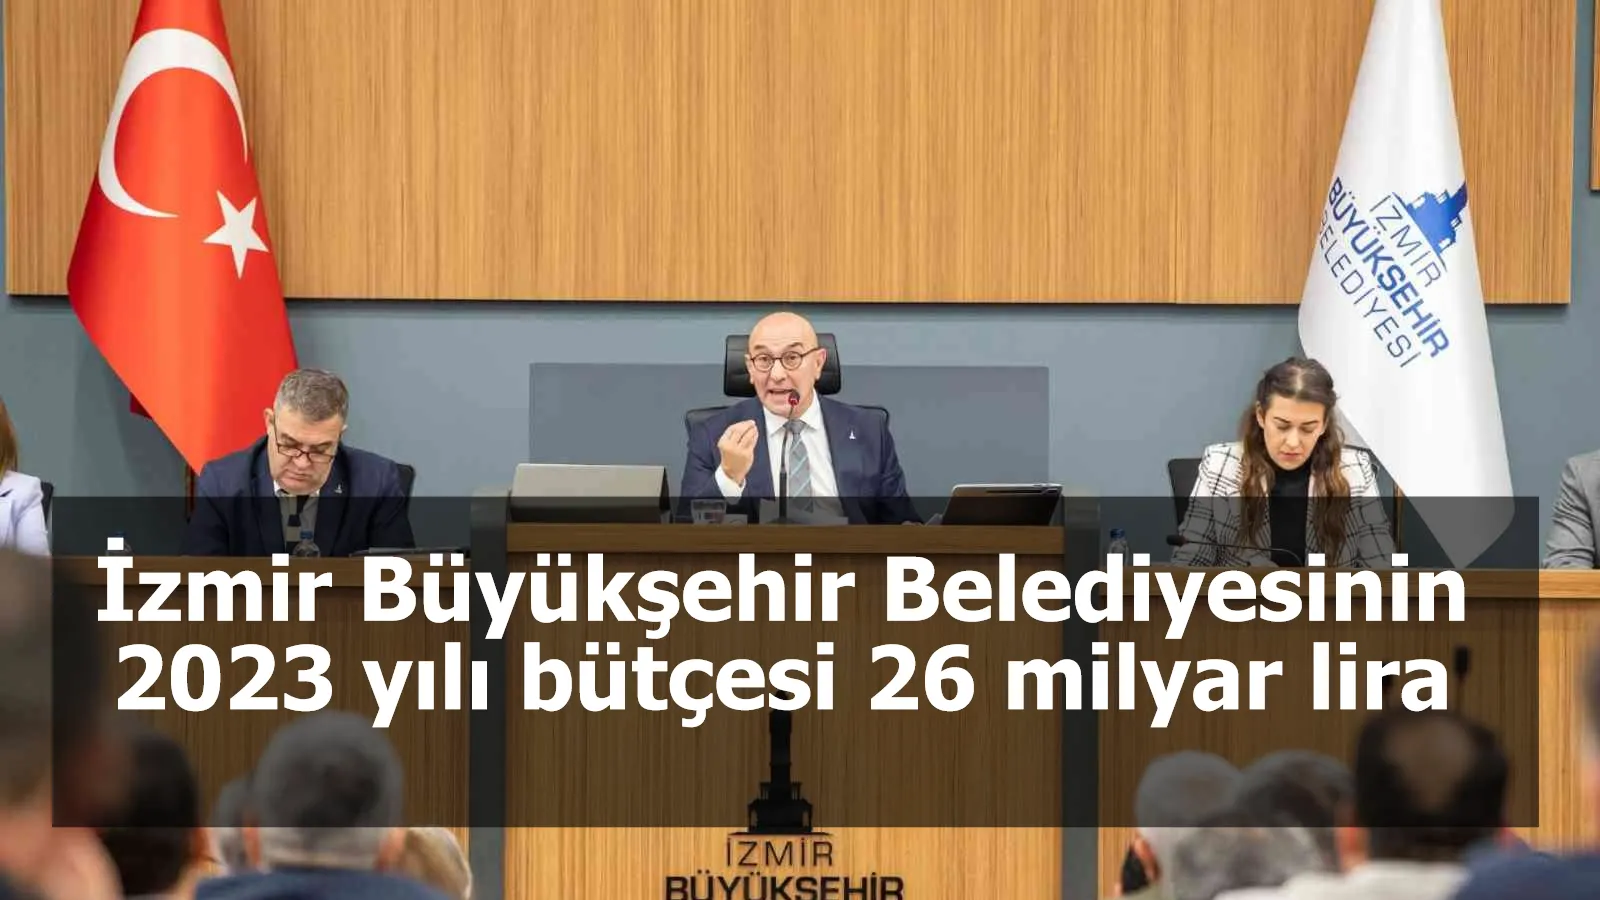 İzmir Büyükşehir Belediyesinin 2023 yılı bütçesi 26 milyar lira